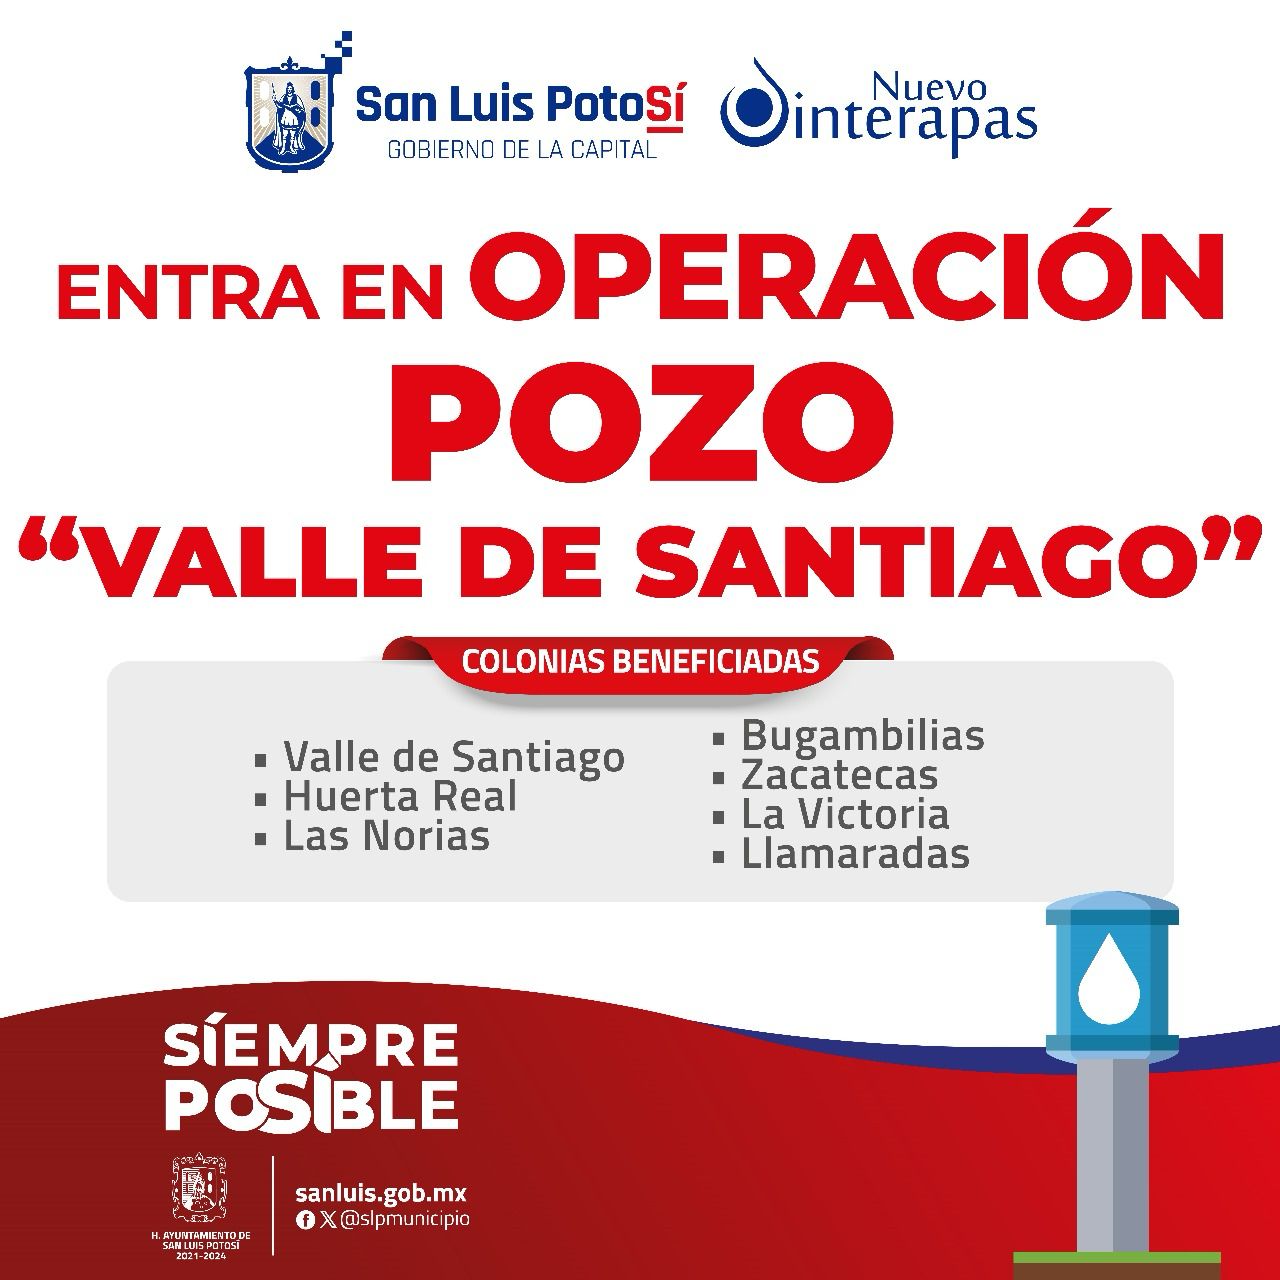 La mañana de este jueves el Interapas puso en operación el pozo “Valle de Santiago” por lo que el suministro en la zona de influencia se estará normalizando